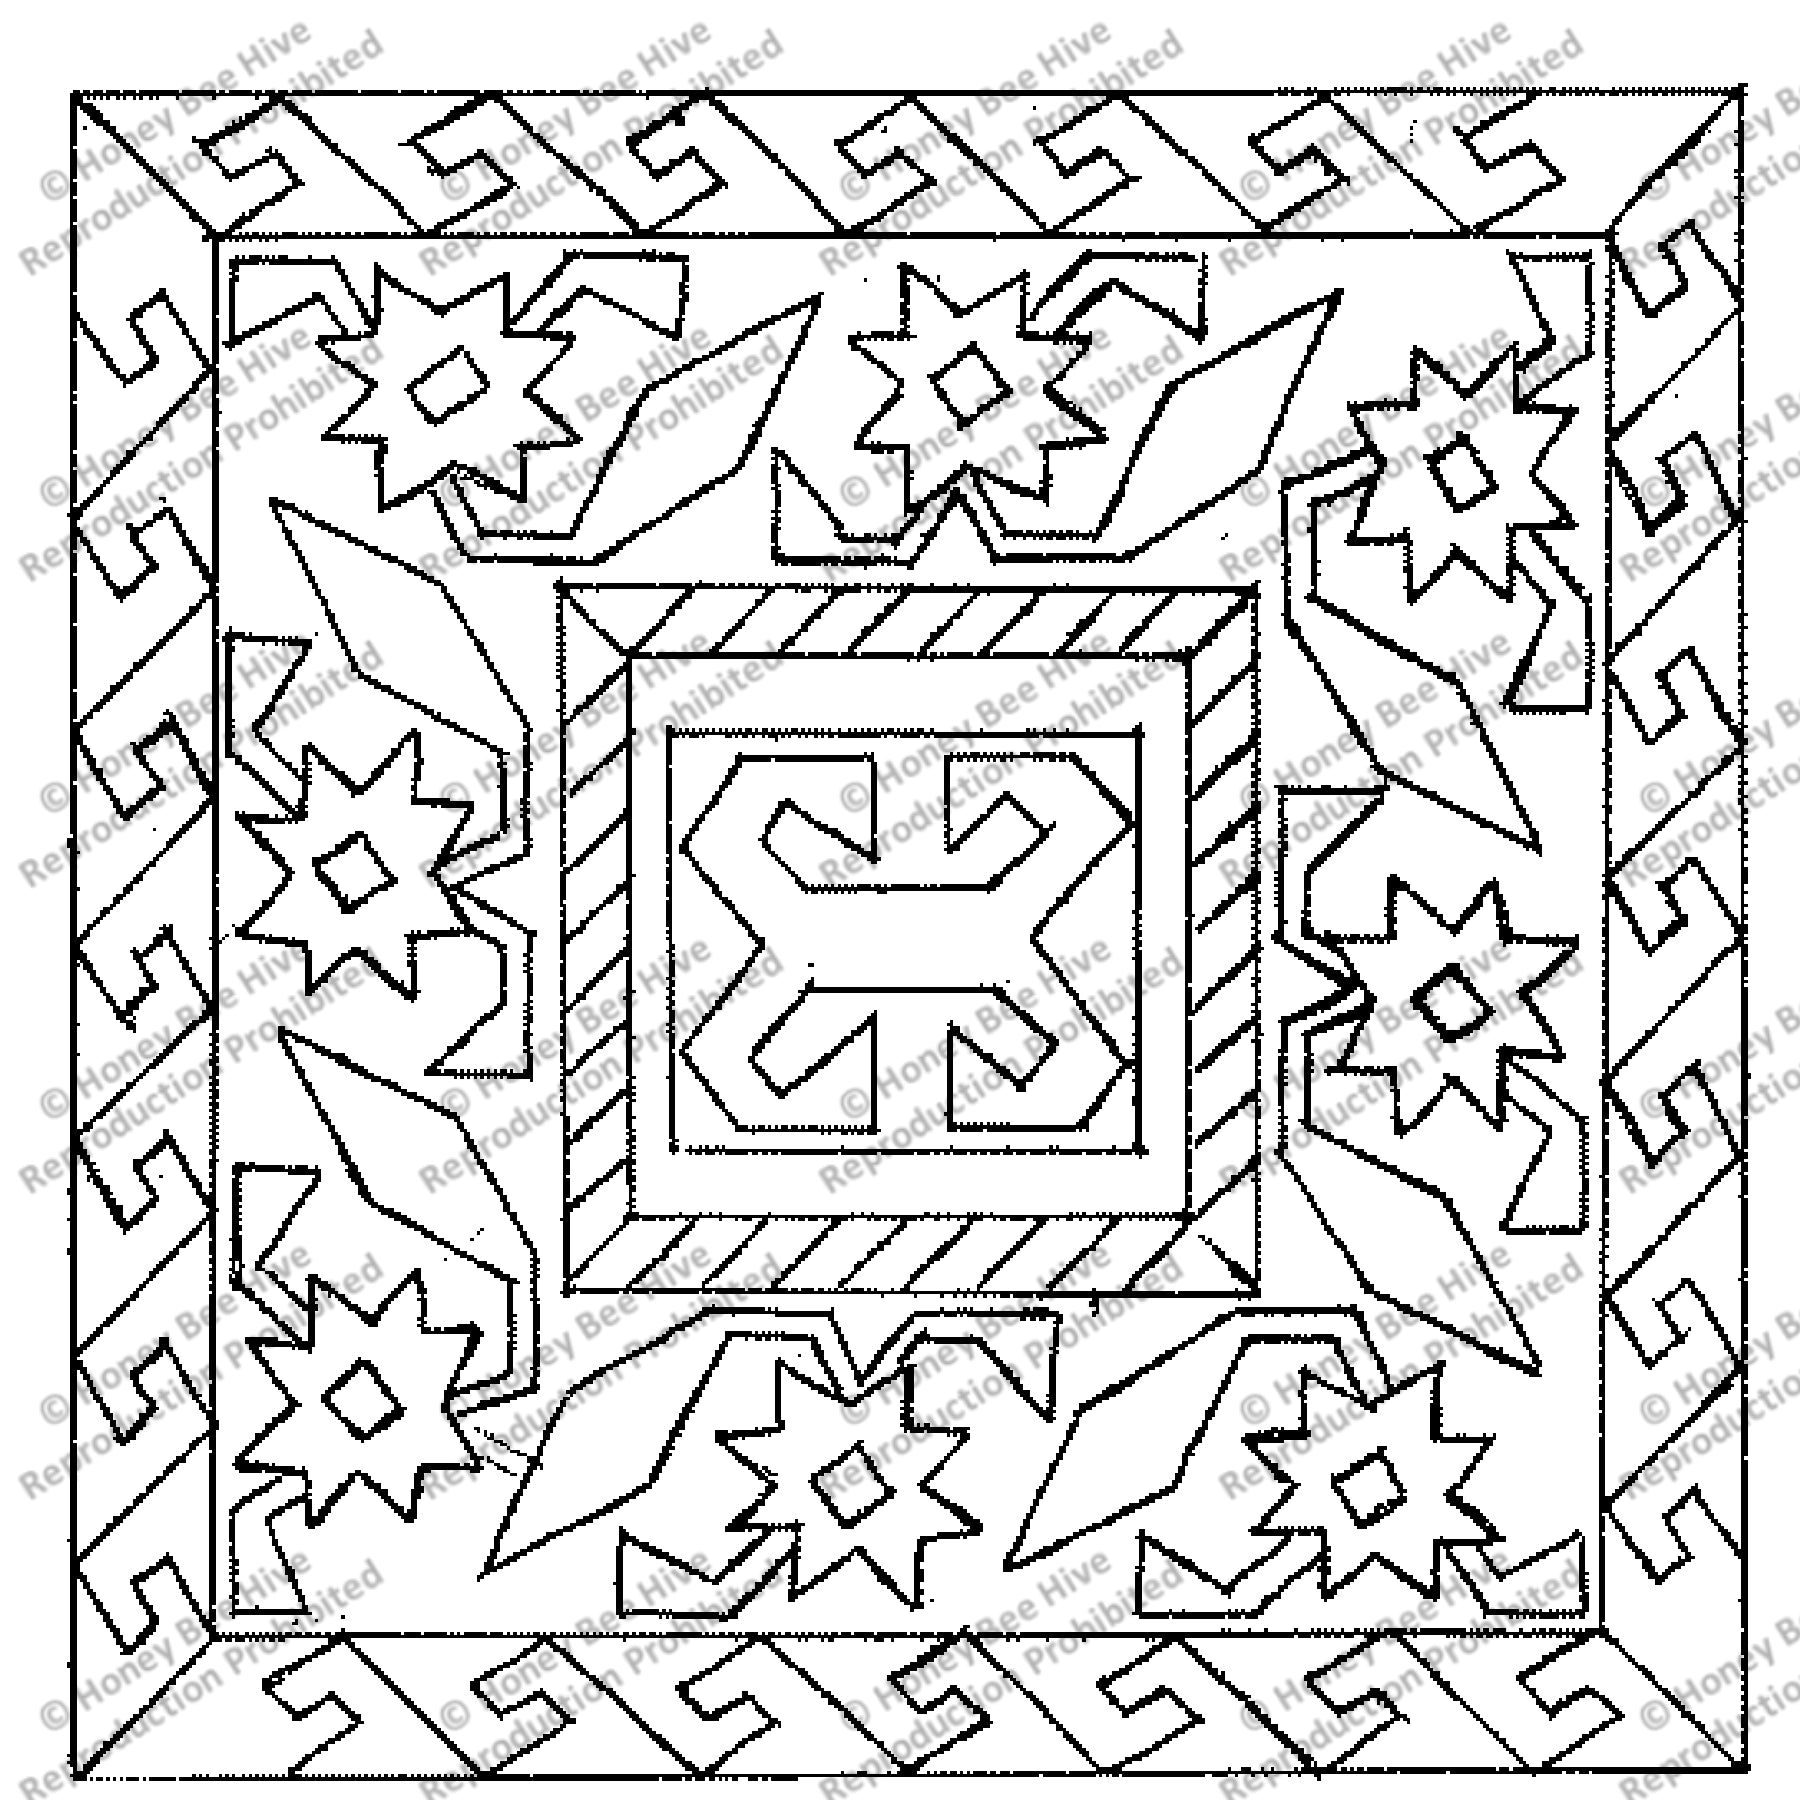 Jewel, rug hooking pattern